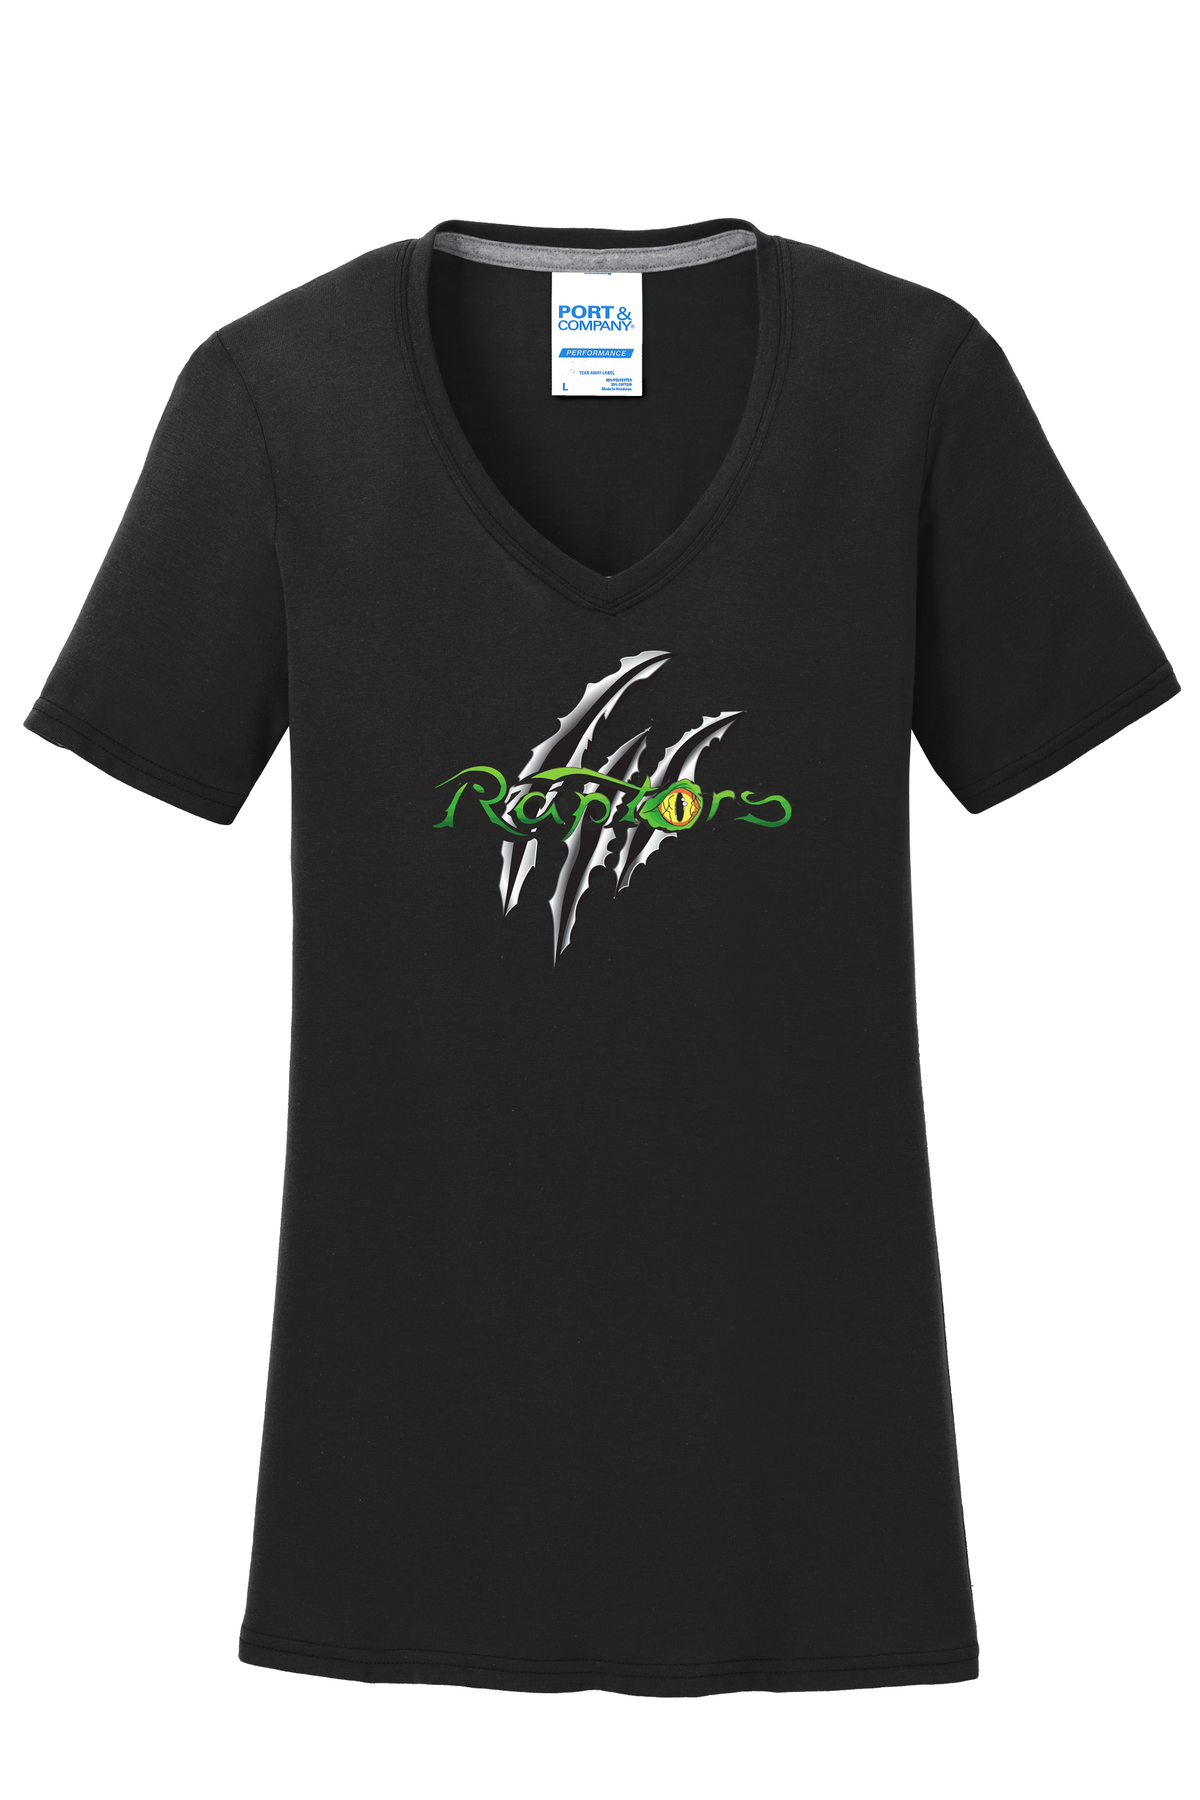 Raptors Lacrosse Women's T-Shirt